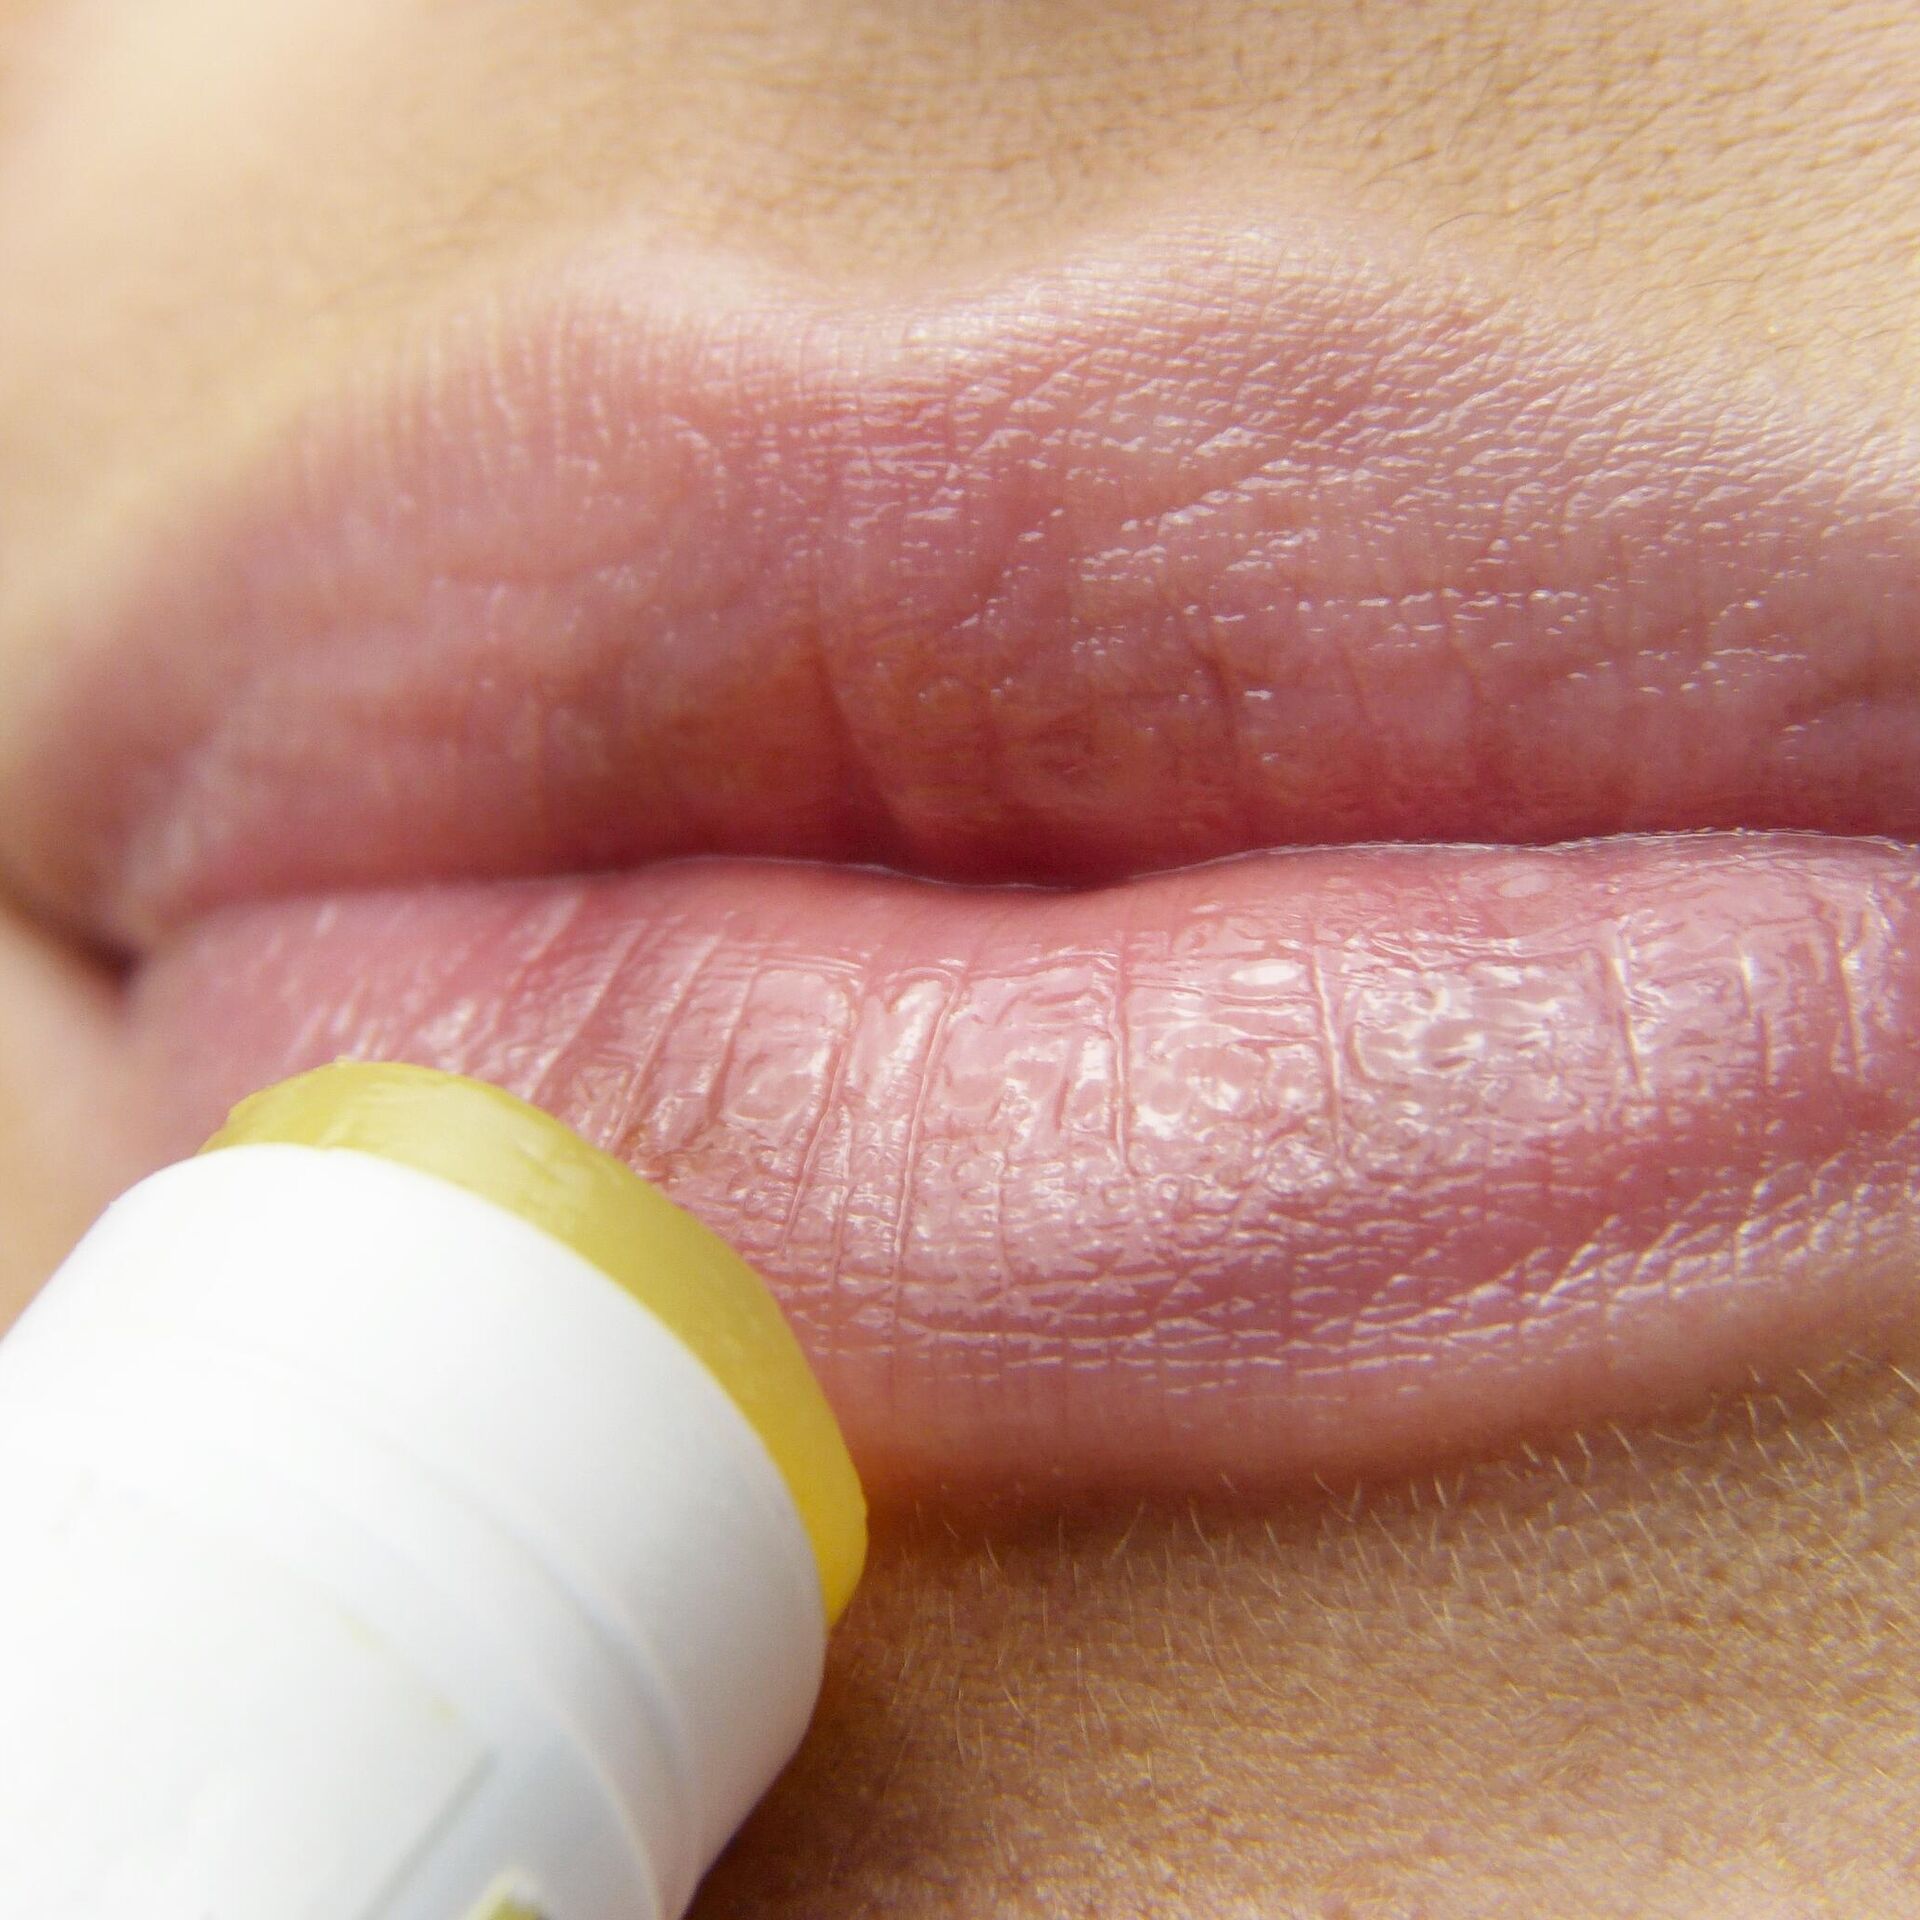 Как избавиться от герпеса на губах - что нужно знать о герпетической инфекции - Здравица